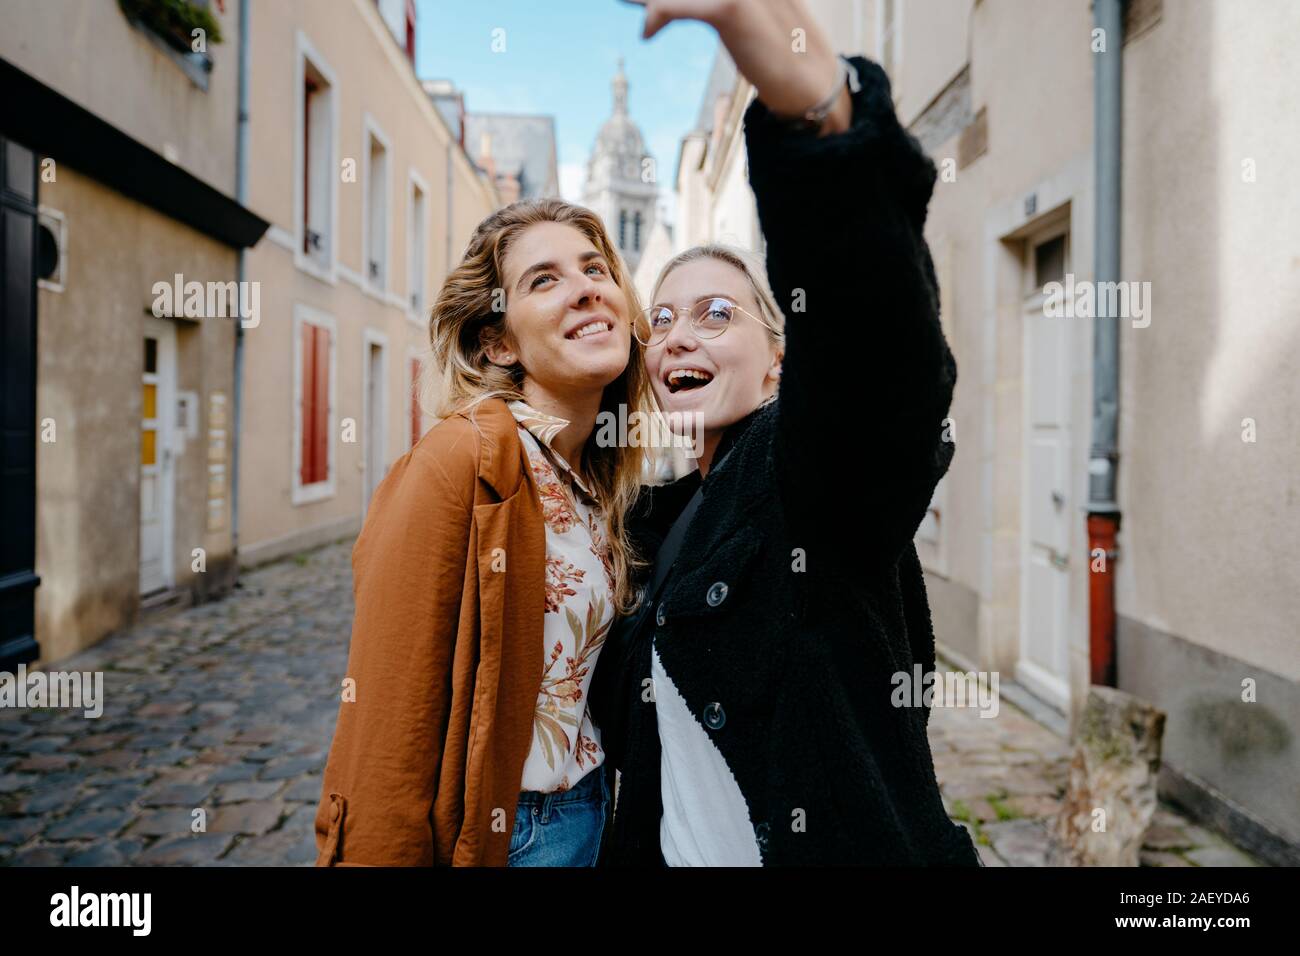 Junge Frauen, die selfie in einer typischen französischen Stadt Straße Stockfoto